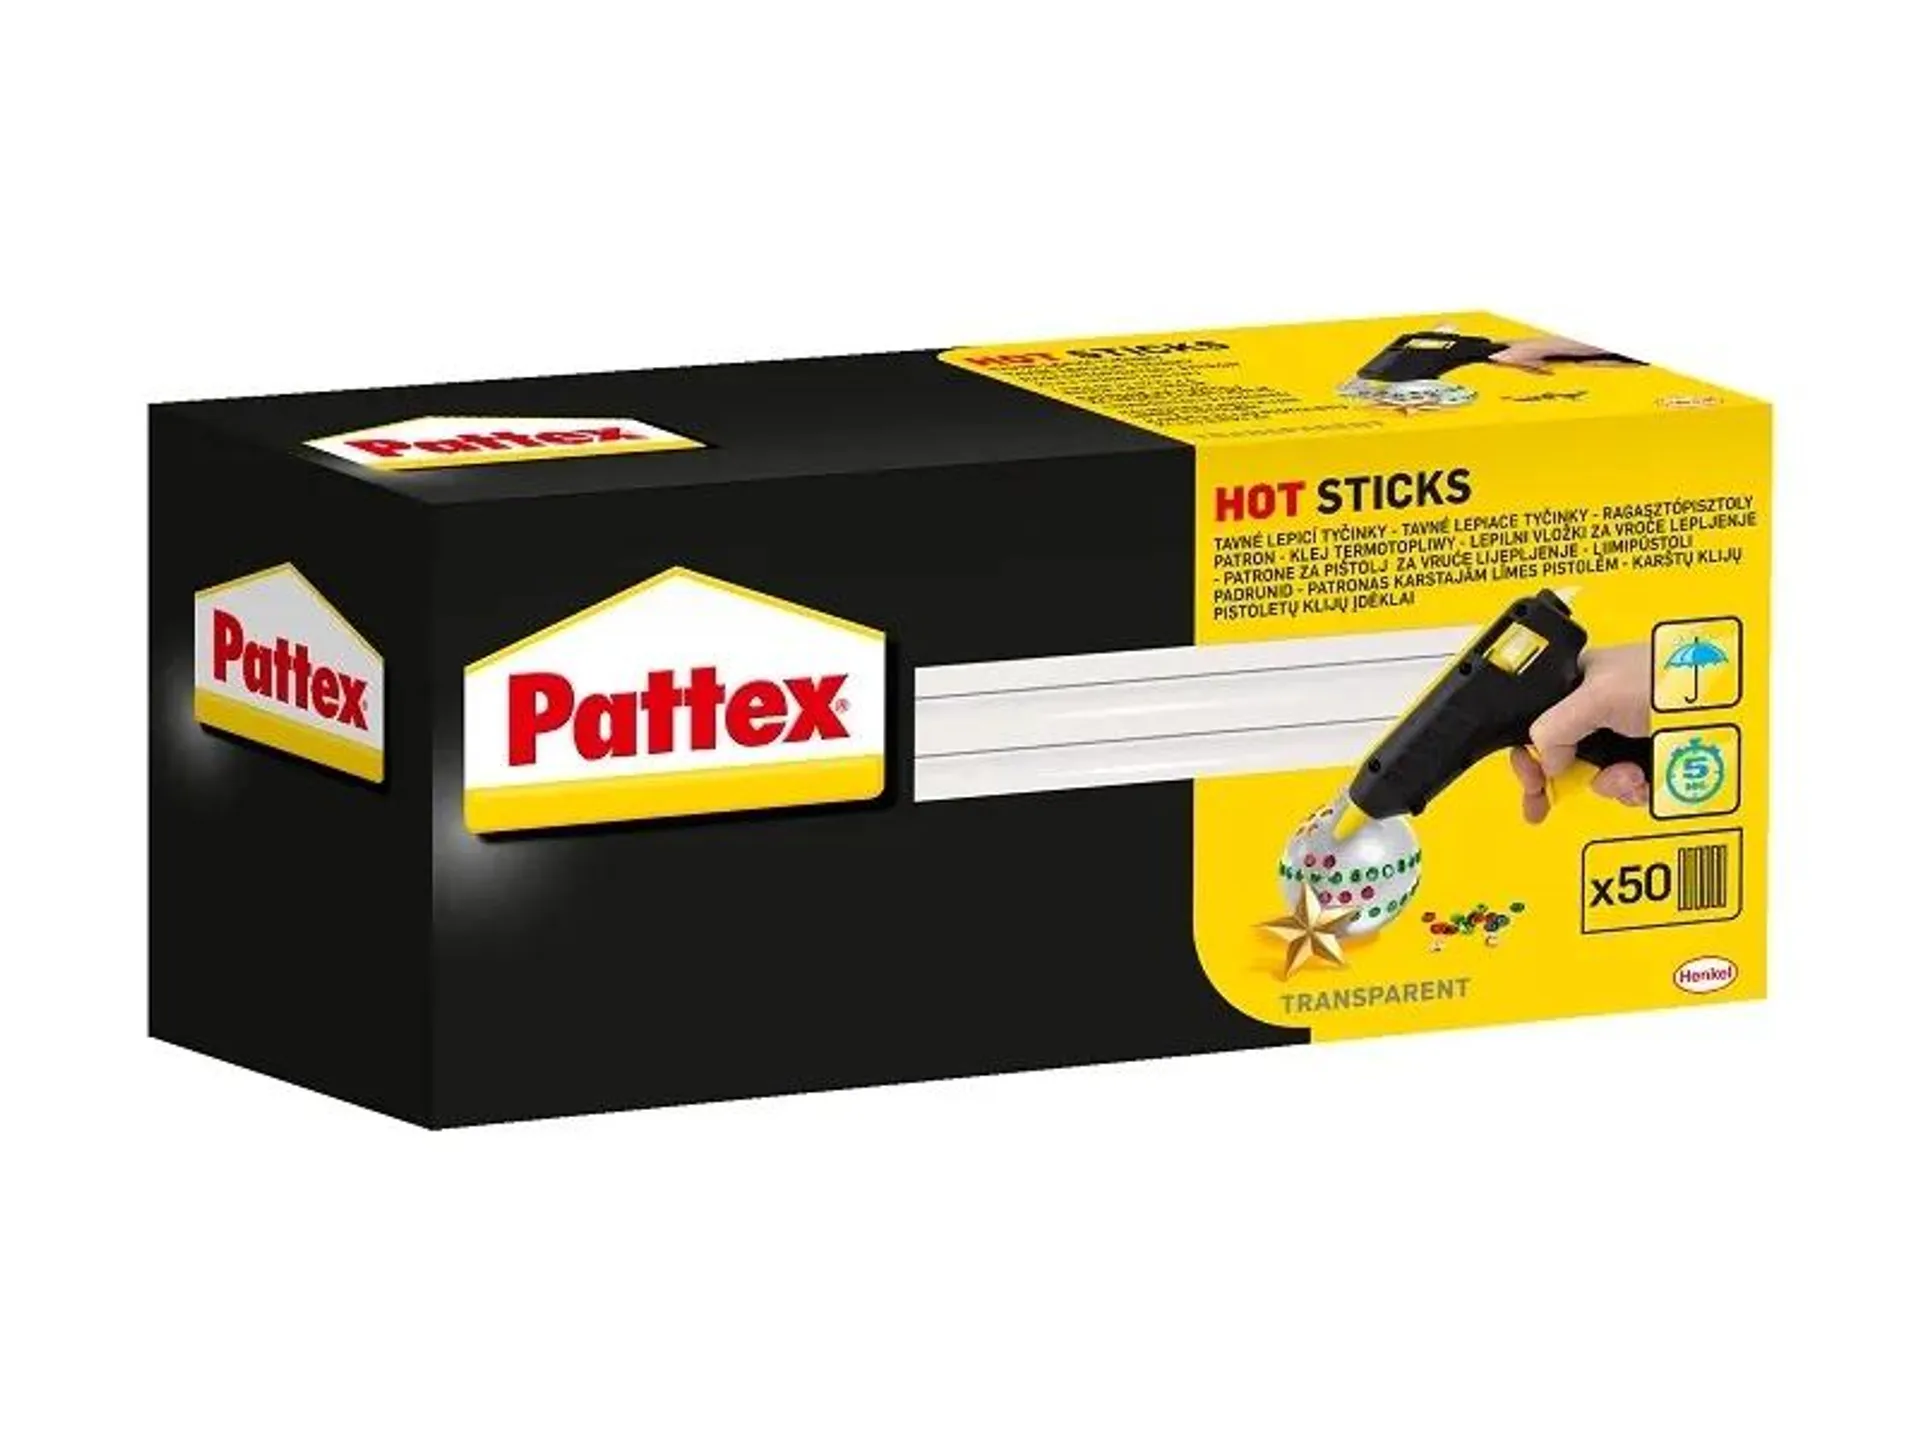 PATTEX HOT STICKS - ömledékragasztó patron PATTEX ragasztópisztolyhoz (1kg)